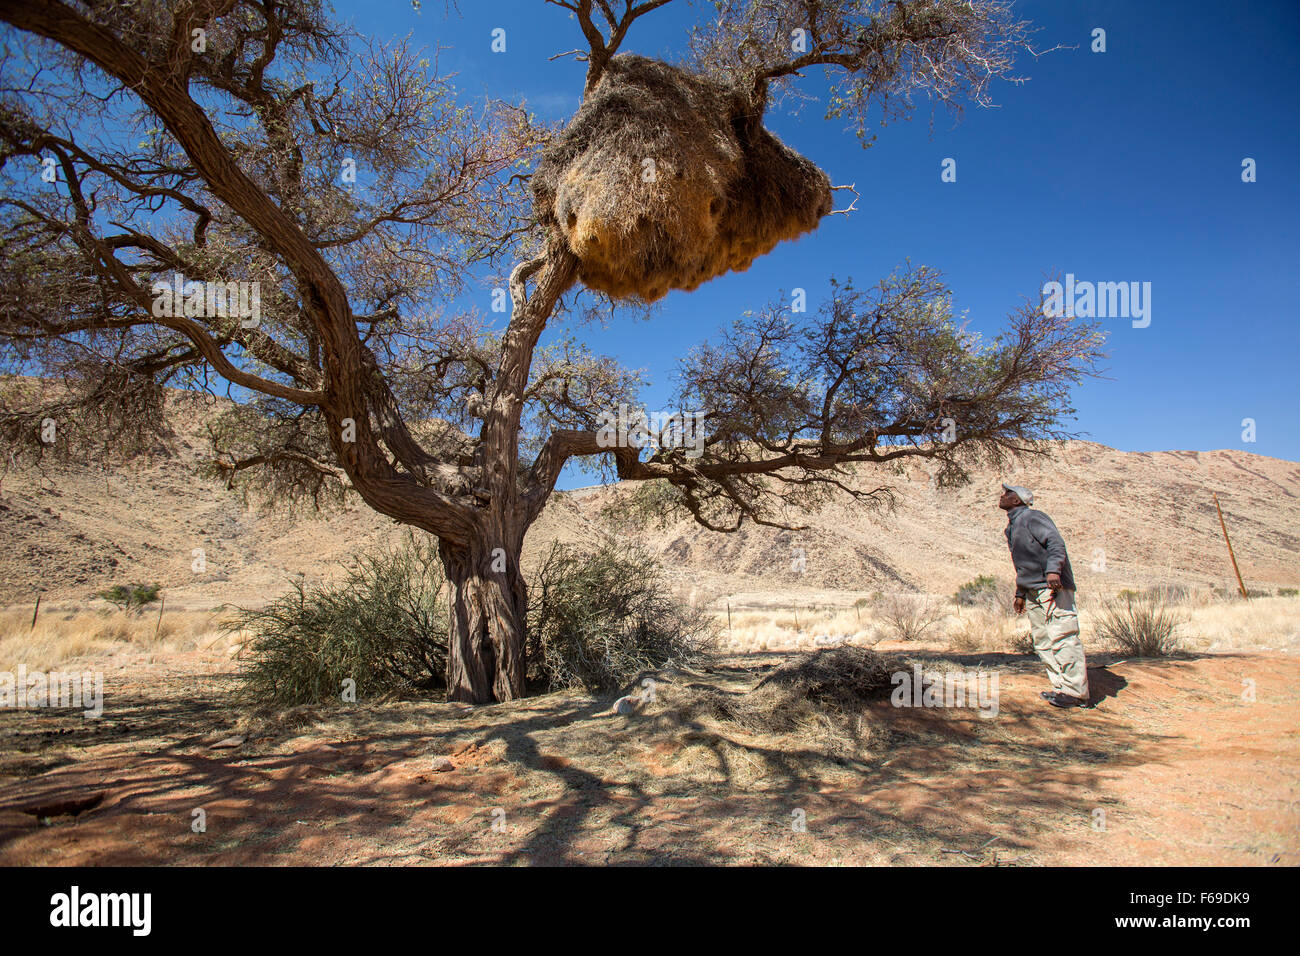 Safari guide observing social weaver bird nest, Namibia, Africa Stock Photo